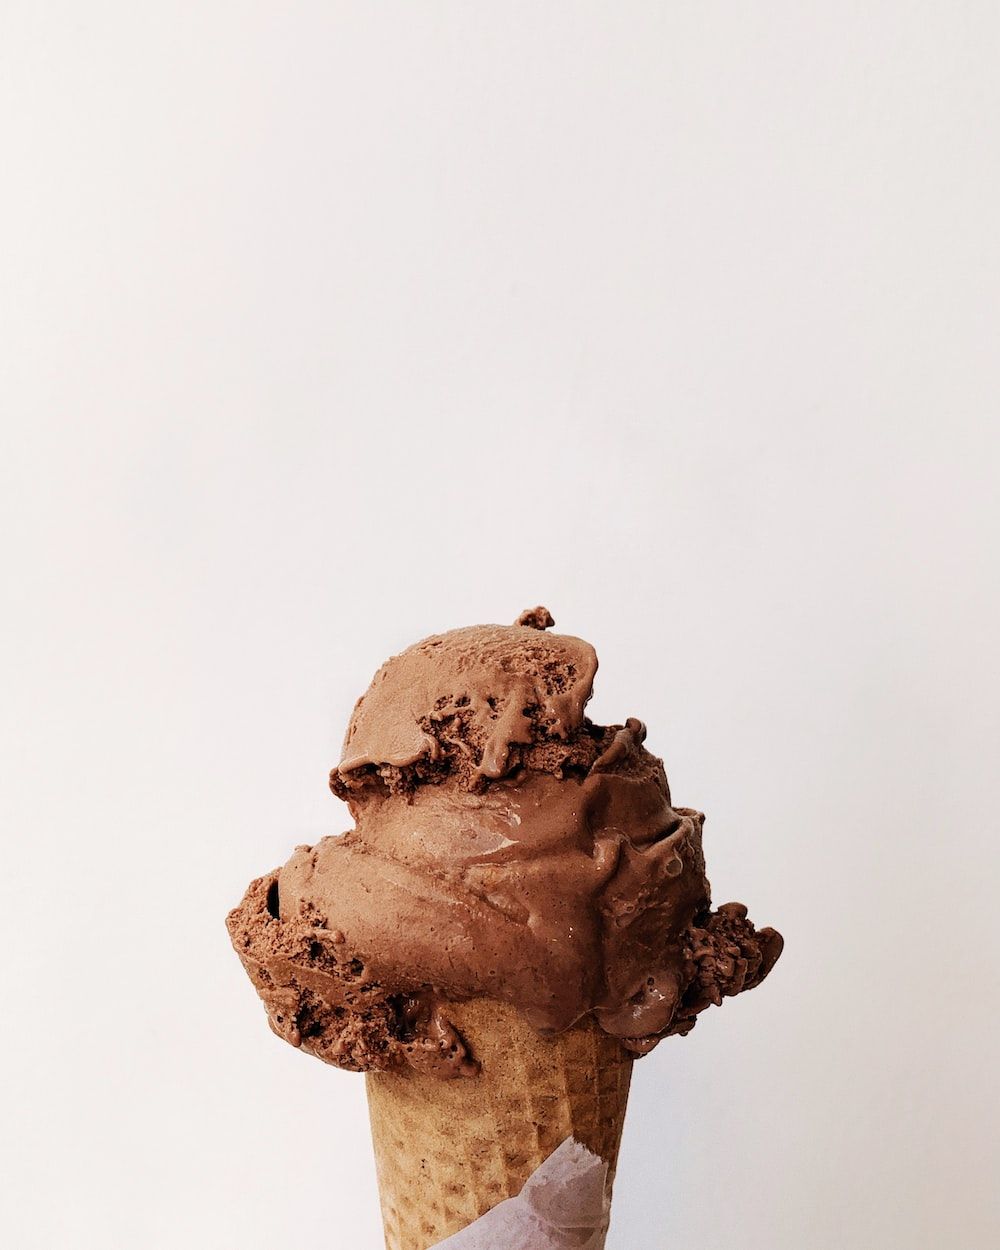 A person holding an ice cream cone - Ice cream